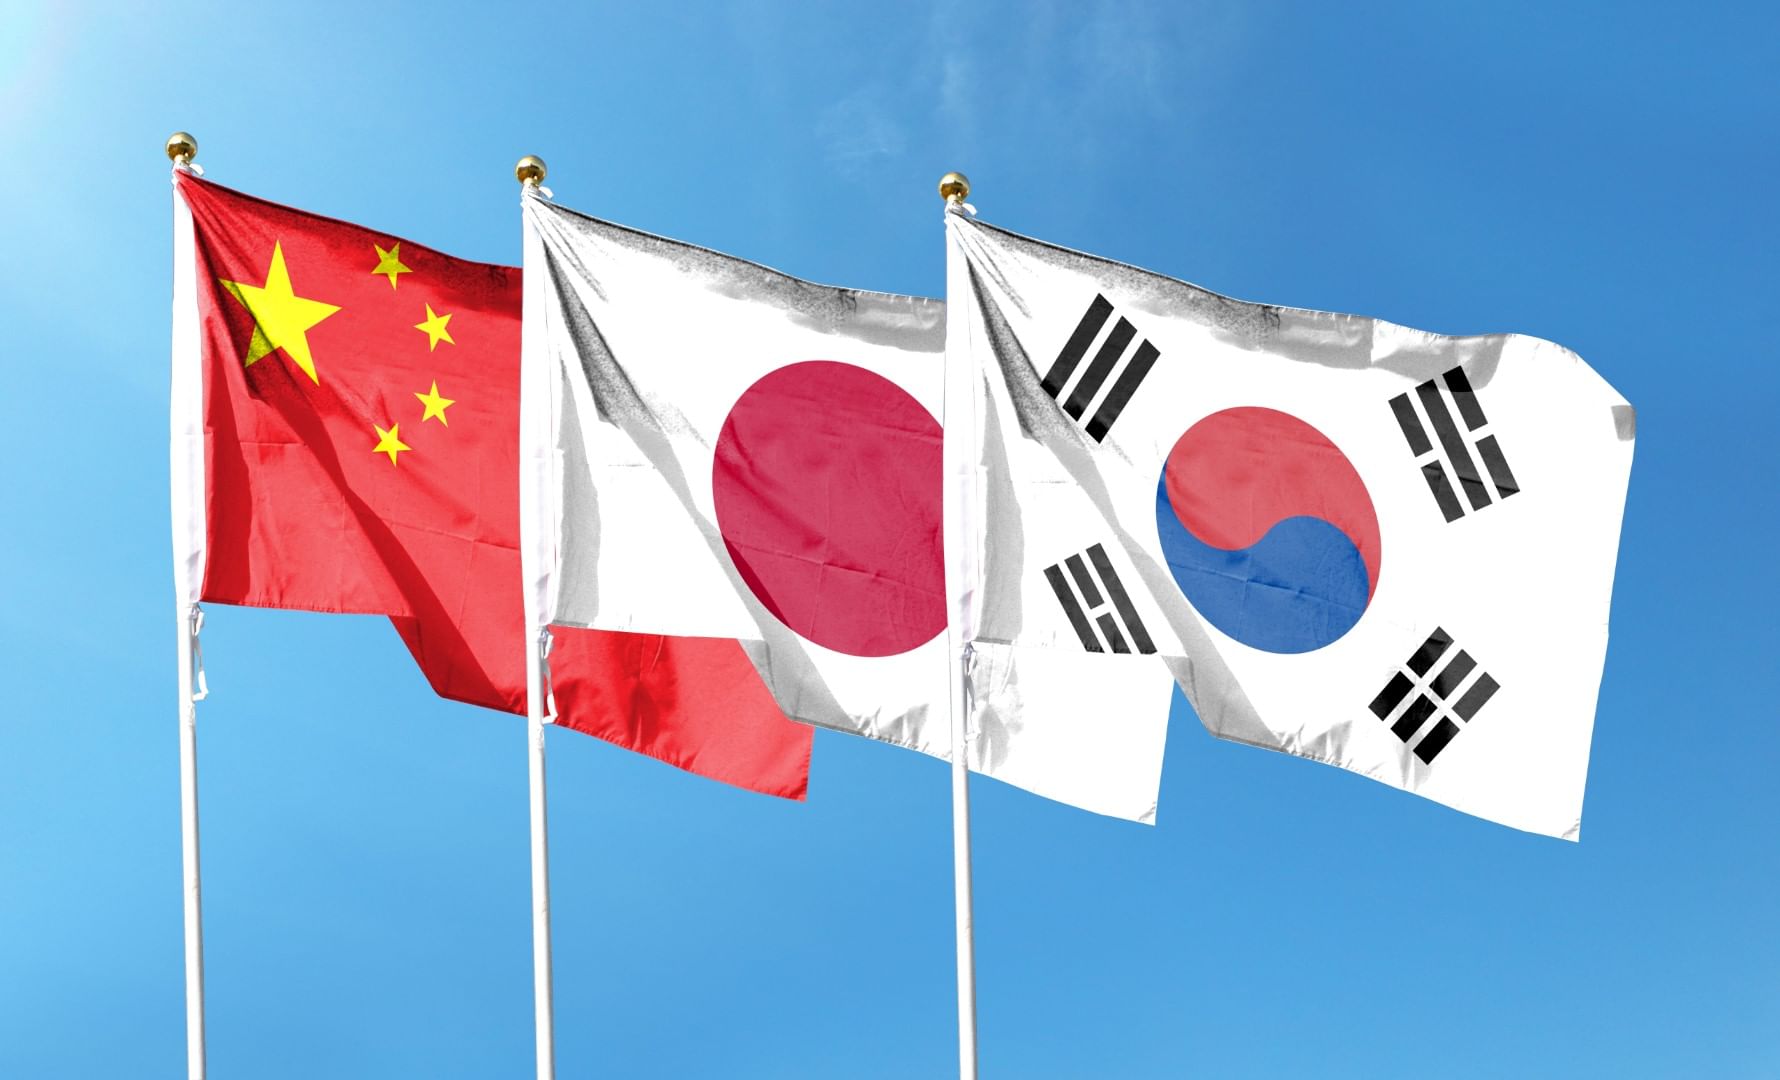 سيول تستضيف أول قمة ثلاثية بين الصين واليابان وكوريا الجنوبية منذ 5 سنوات .